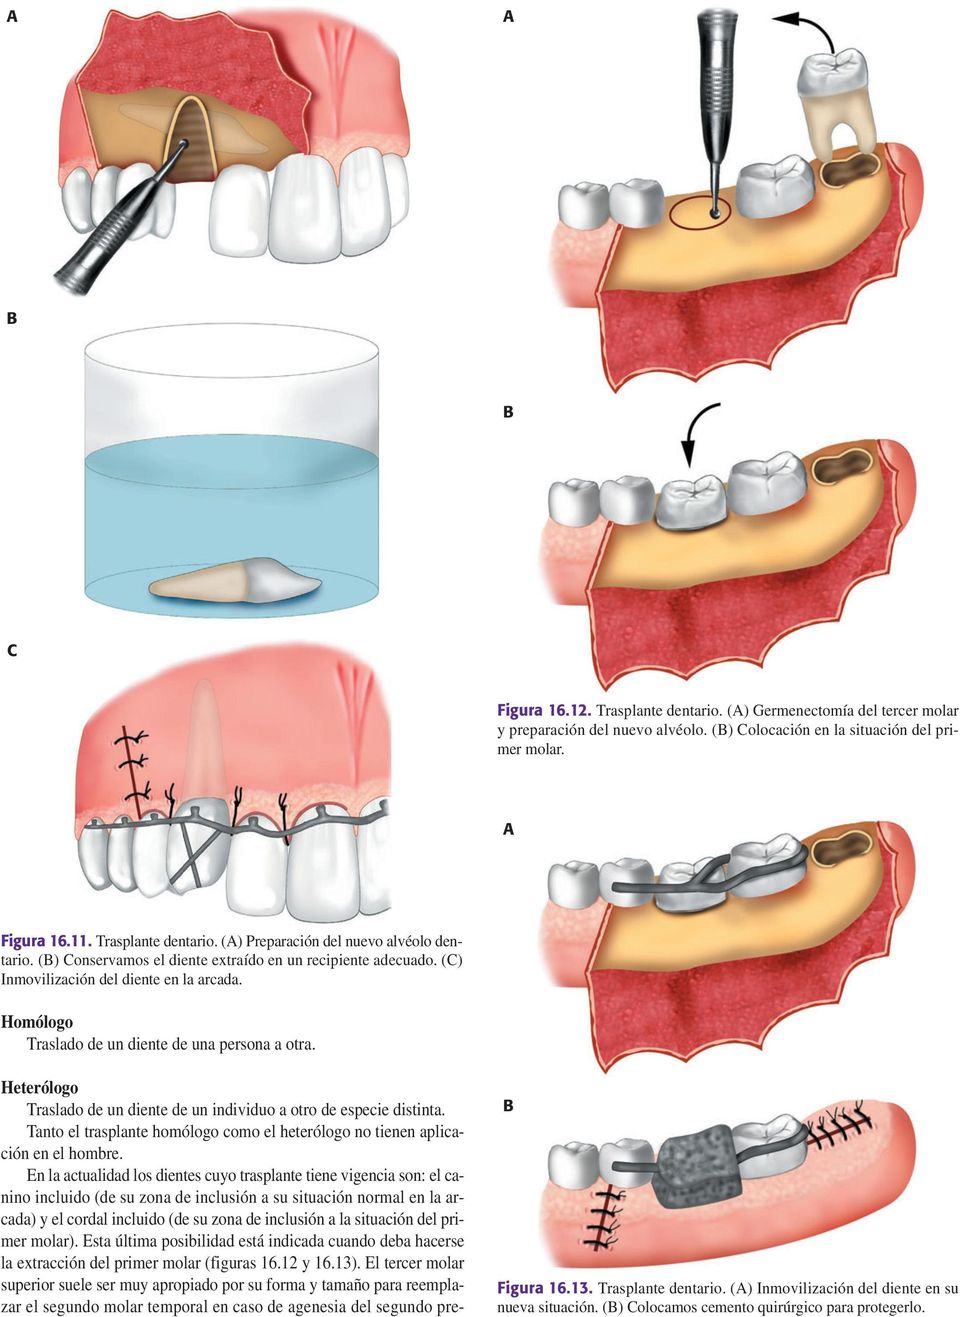 Heterólogo Traslado de un diente de un individuo a otro de especie distinta. Tanto el trasplante homólogo como el heterólogo no tienen aplicación en el hombre.